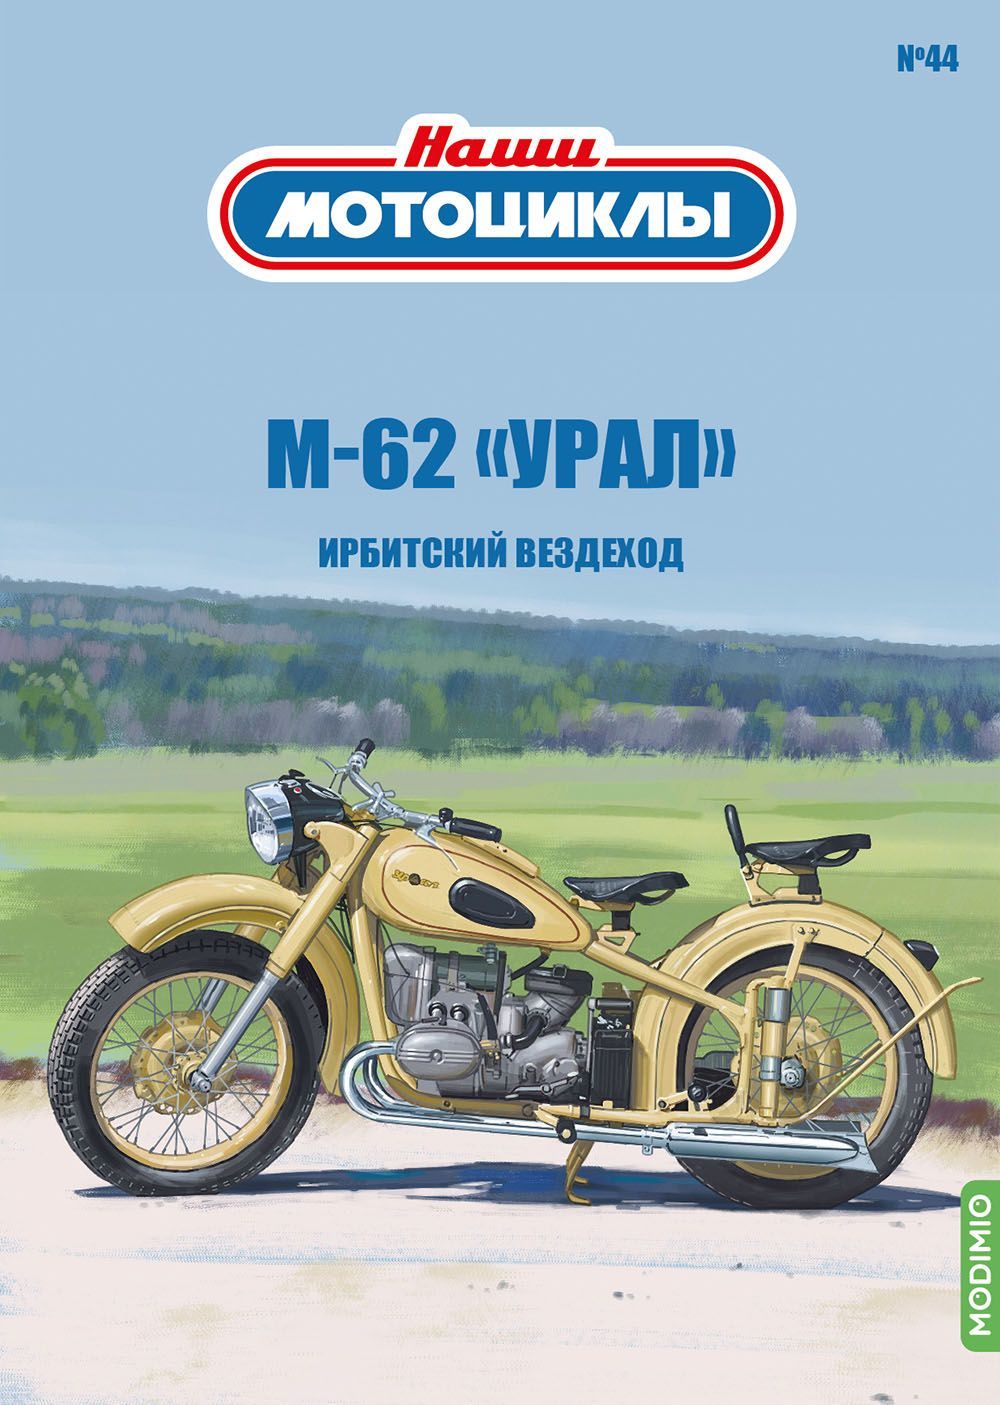 Вездеход из мотоцикла Урал